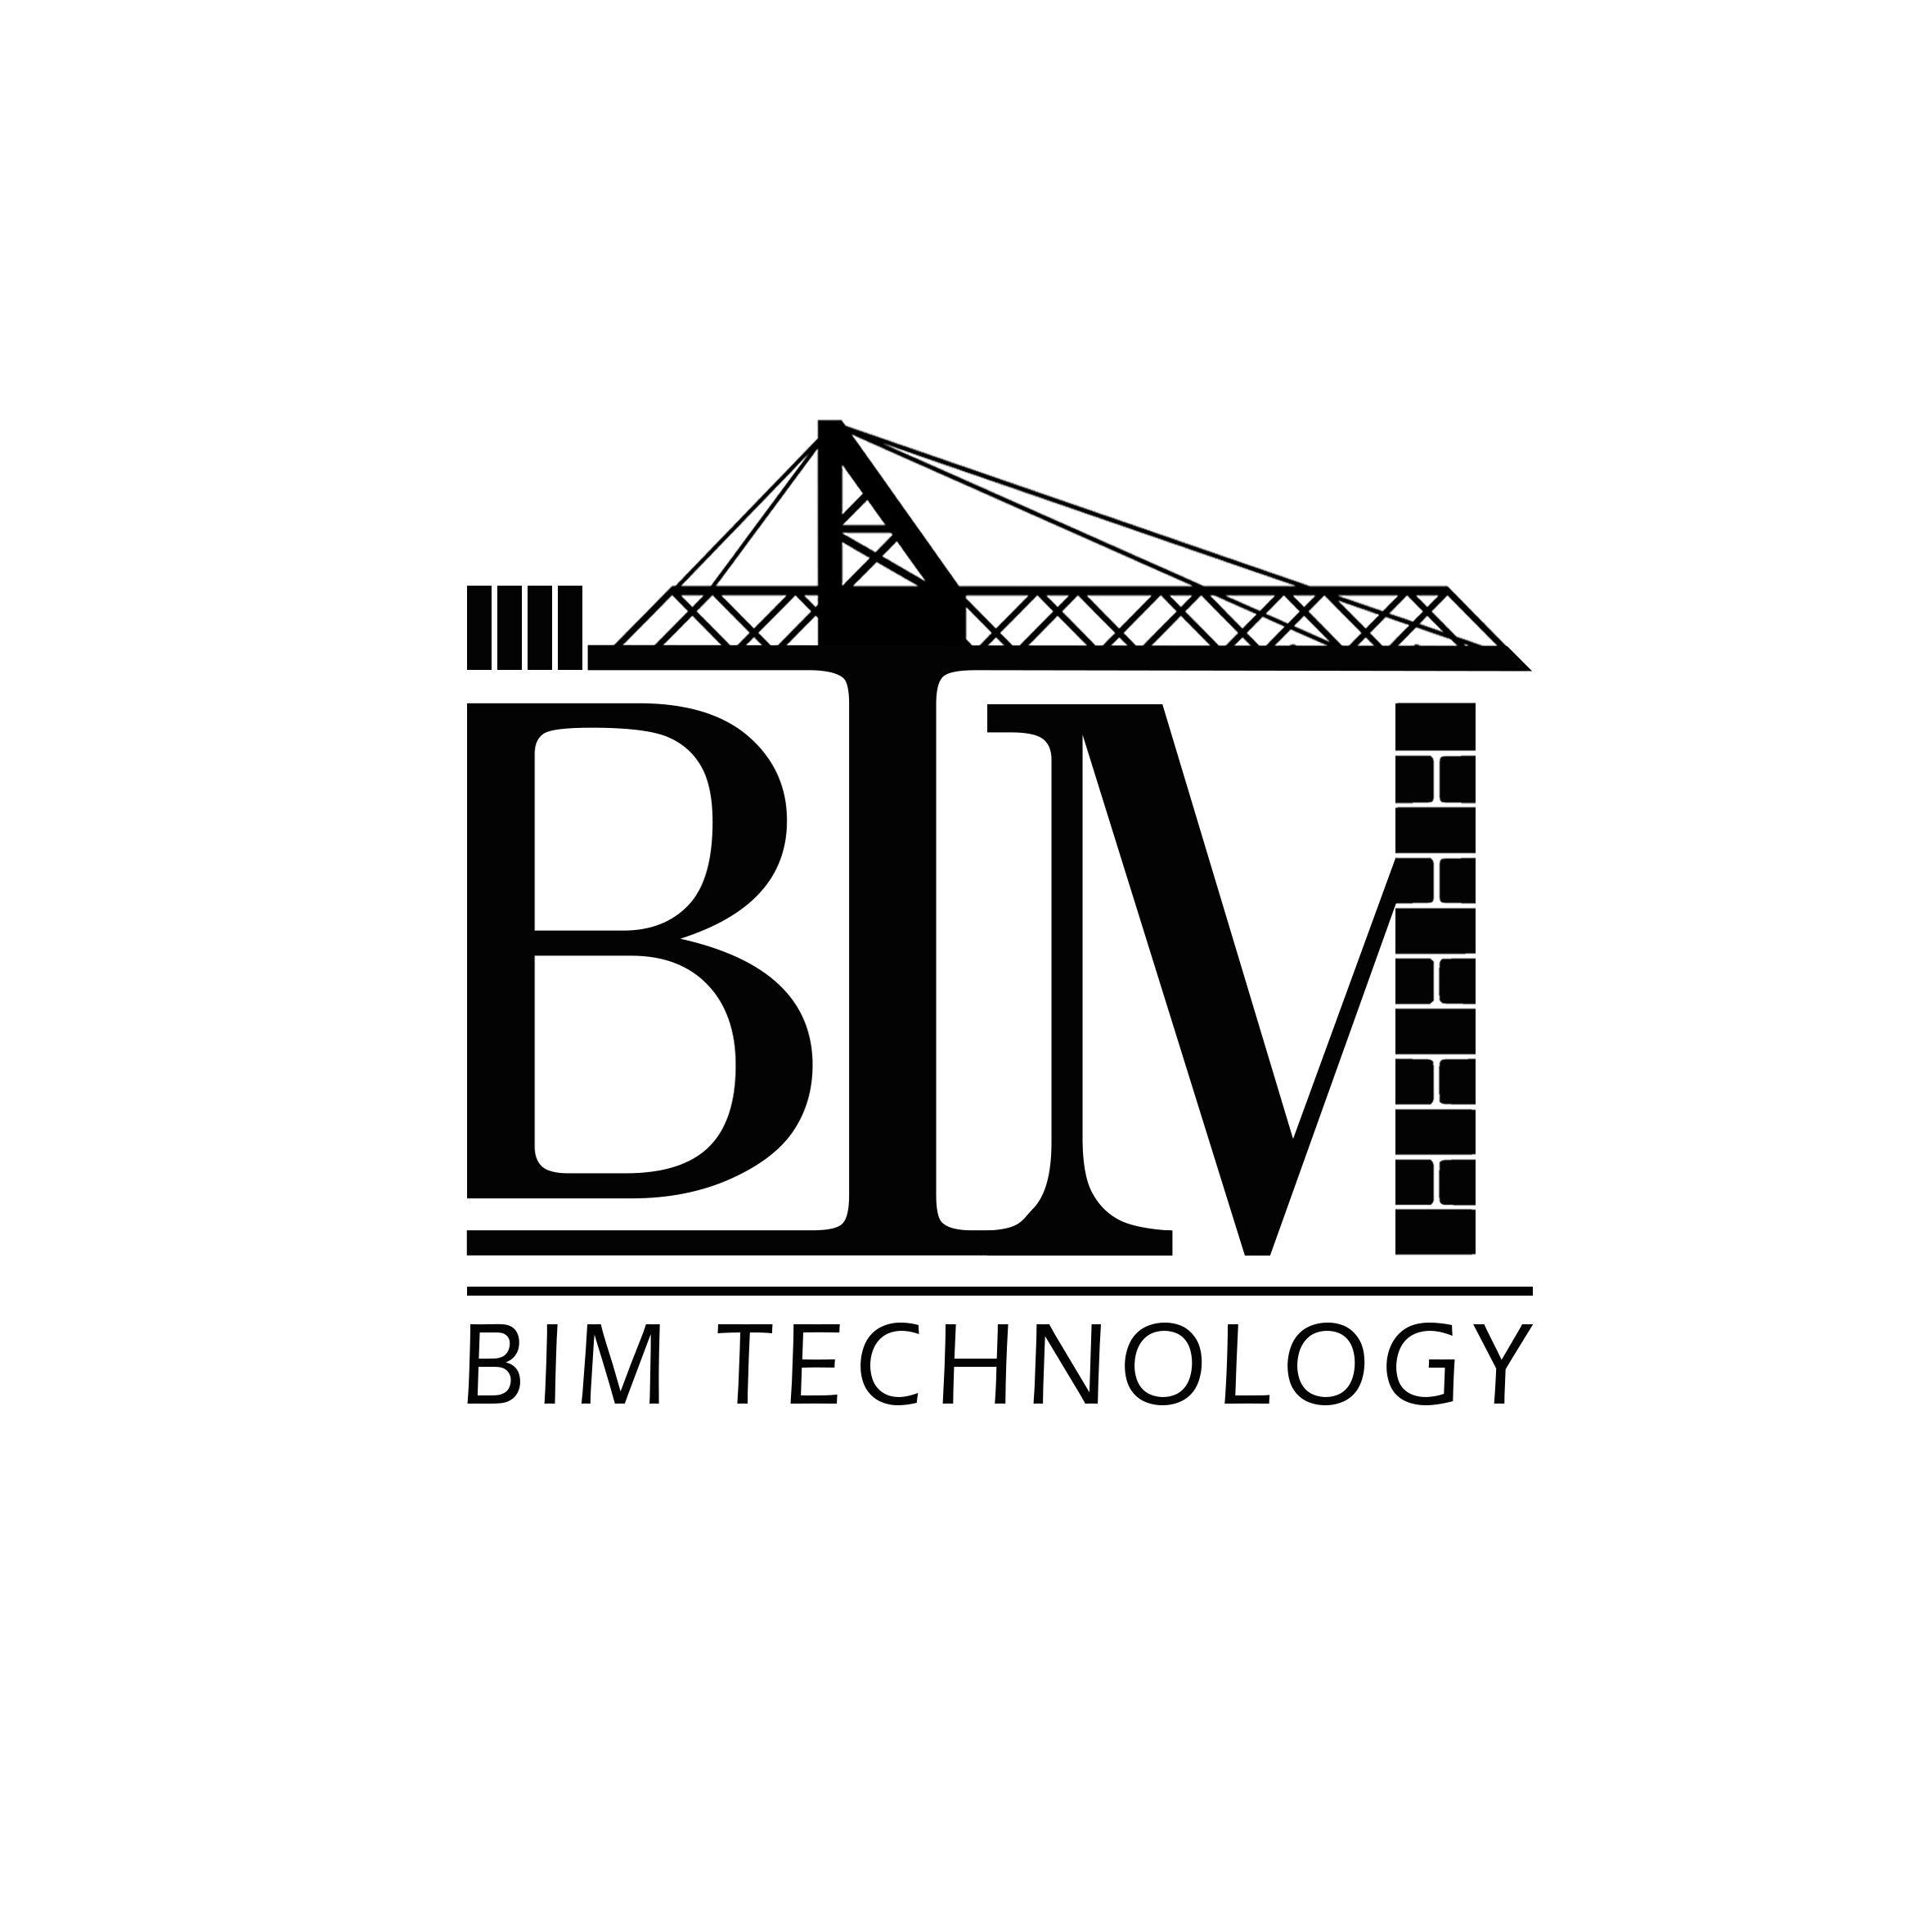 پیاده سازی مدلسازی اطلاعات ساختمان (BIM) توسط گروه مهندسین مشاور بیم تکنولوژی